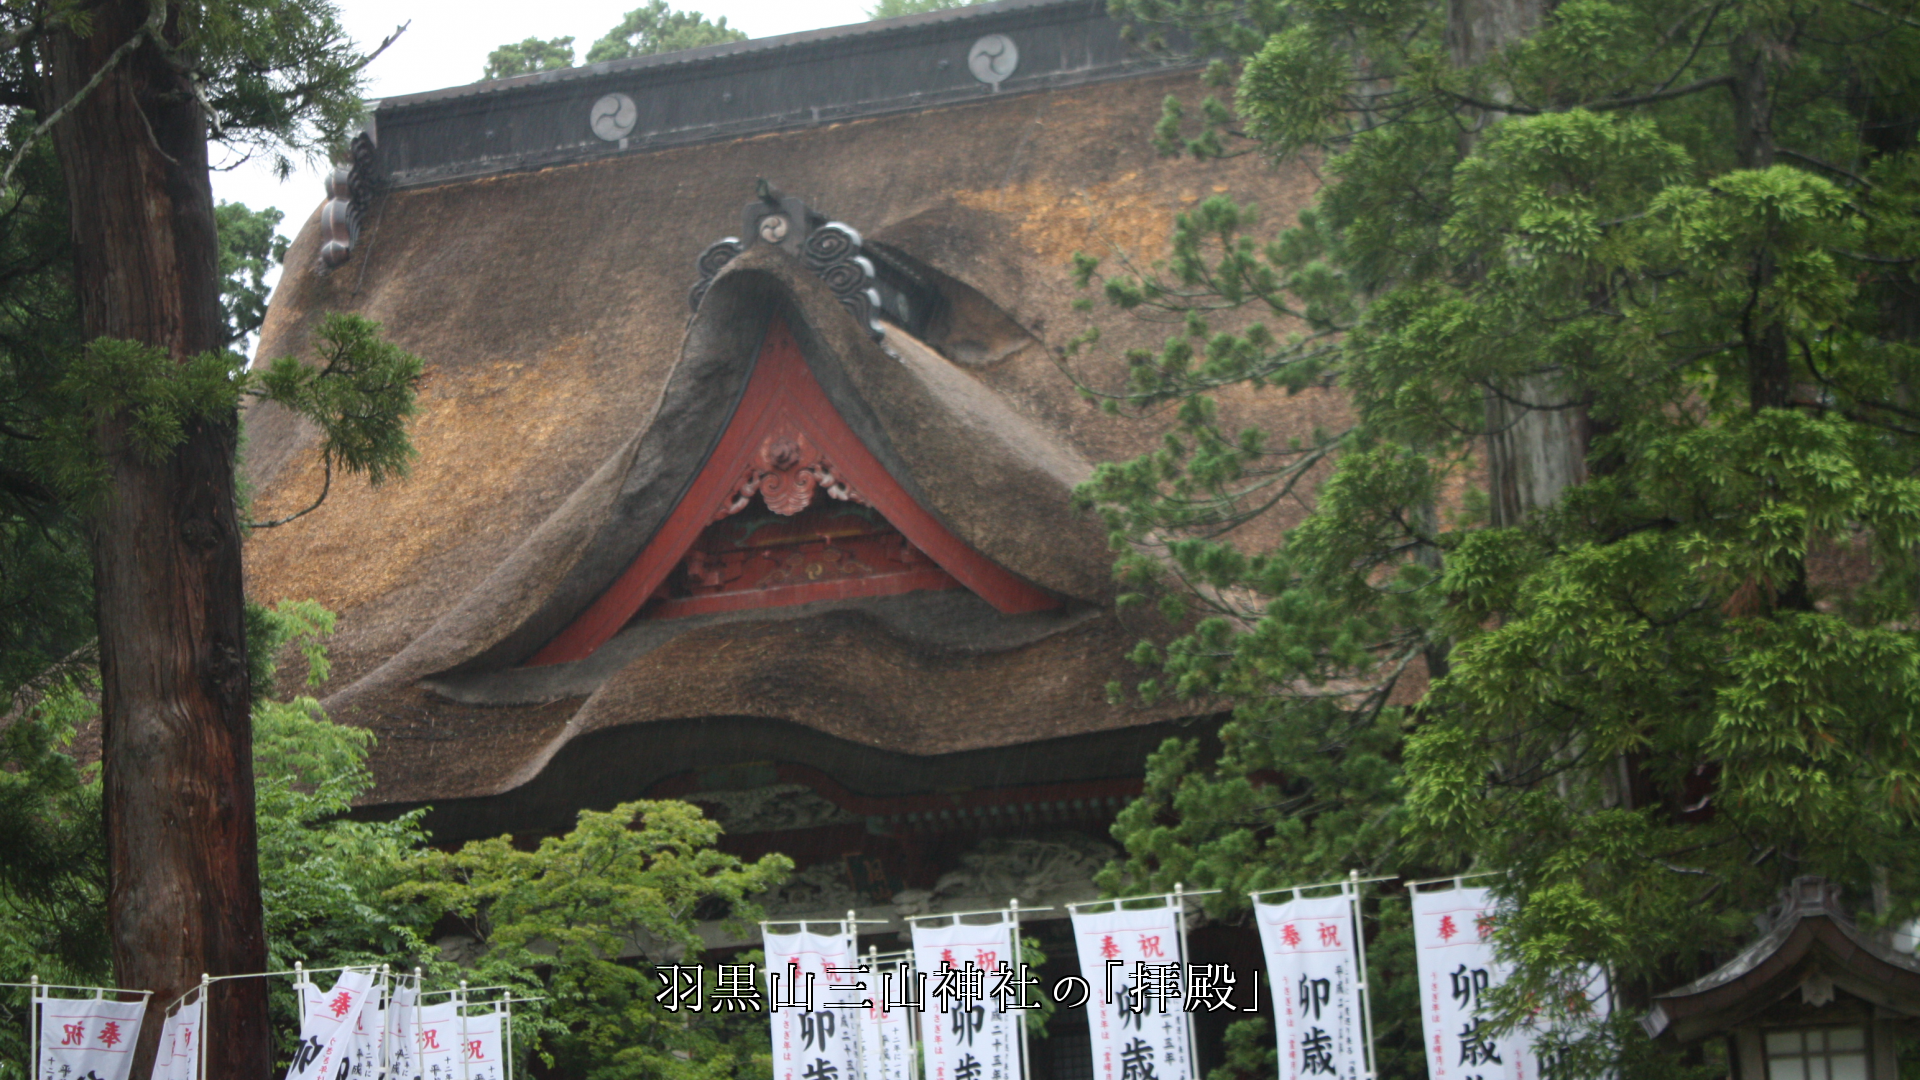 神社の茅葺き屋根  随神門、楼門、拝殿、神楽殿、 それぞれの役目で護っている